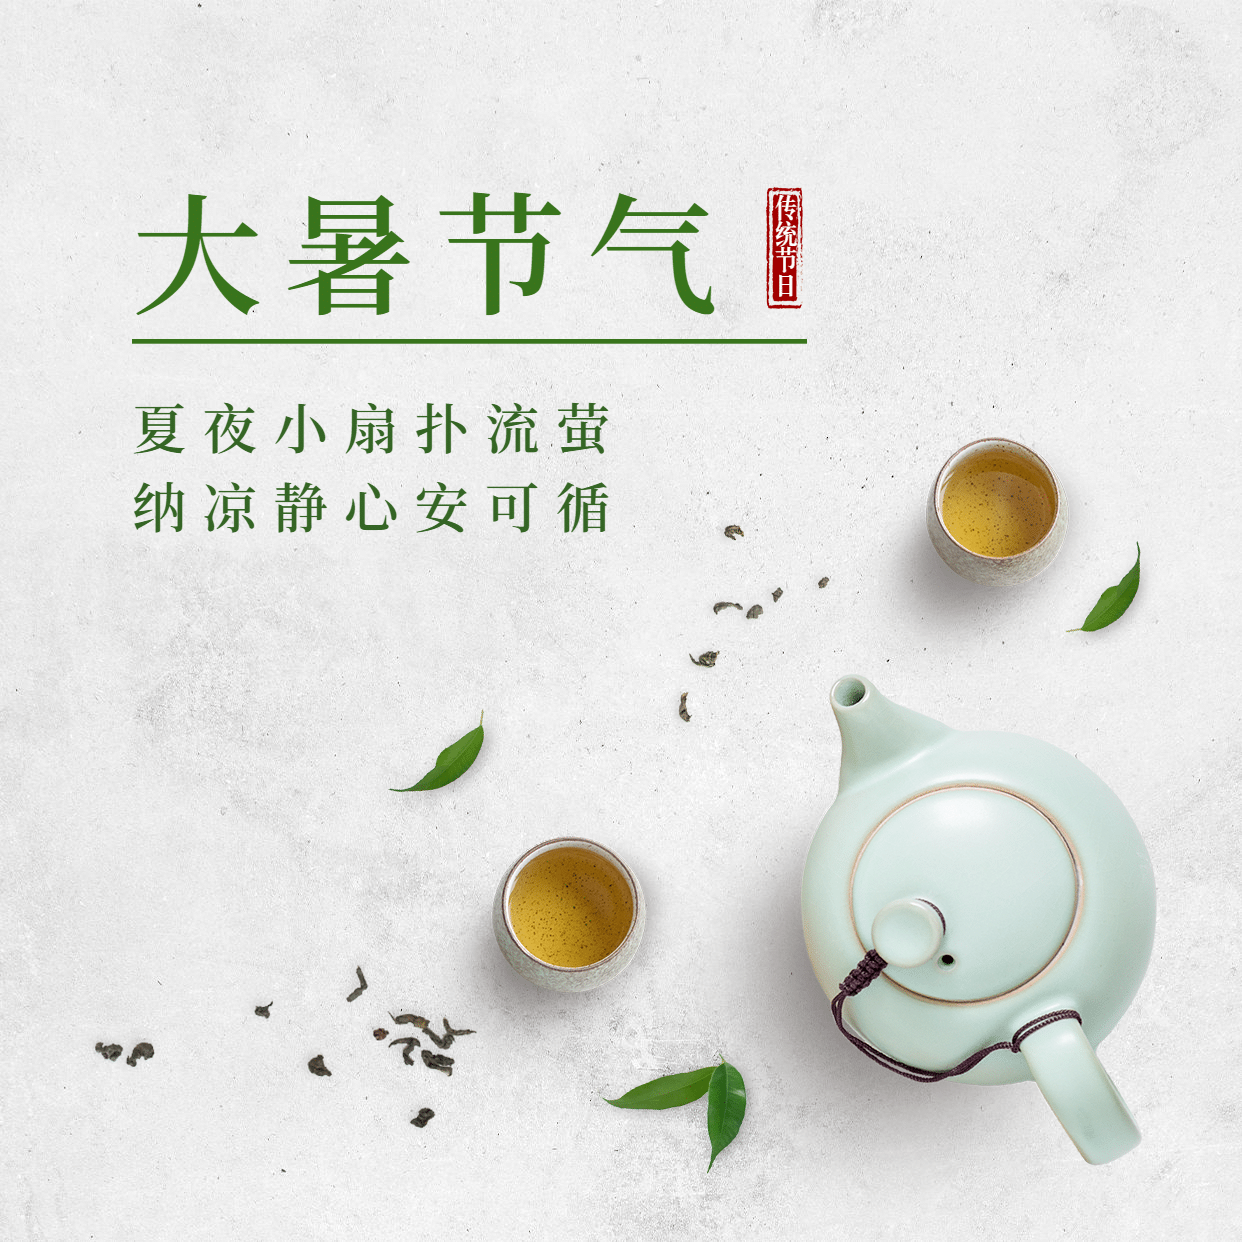 大暑节气祝福实景茶艺方形海报预览效果